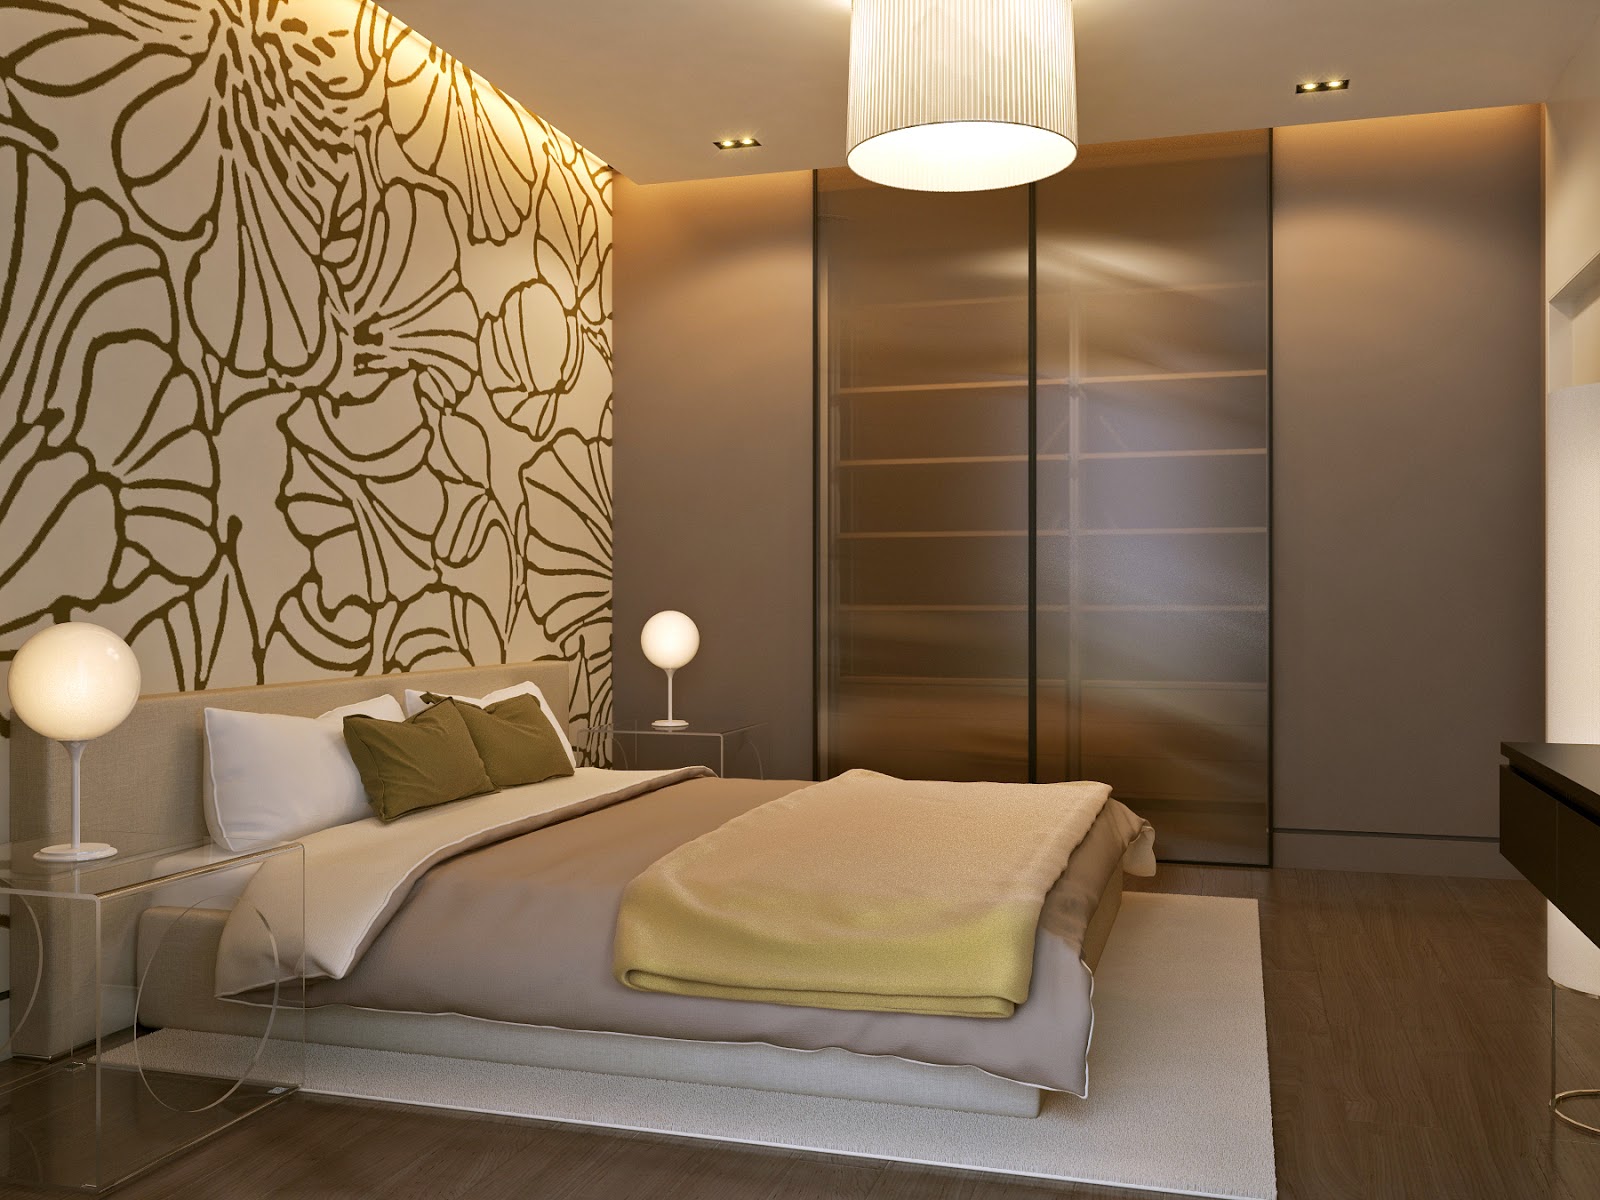 Интерьер спальни в коричневых тонах фото » Современный дизайн на Vip-1gl